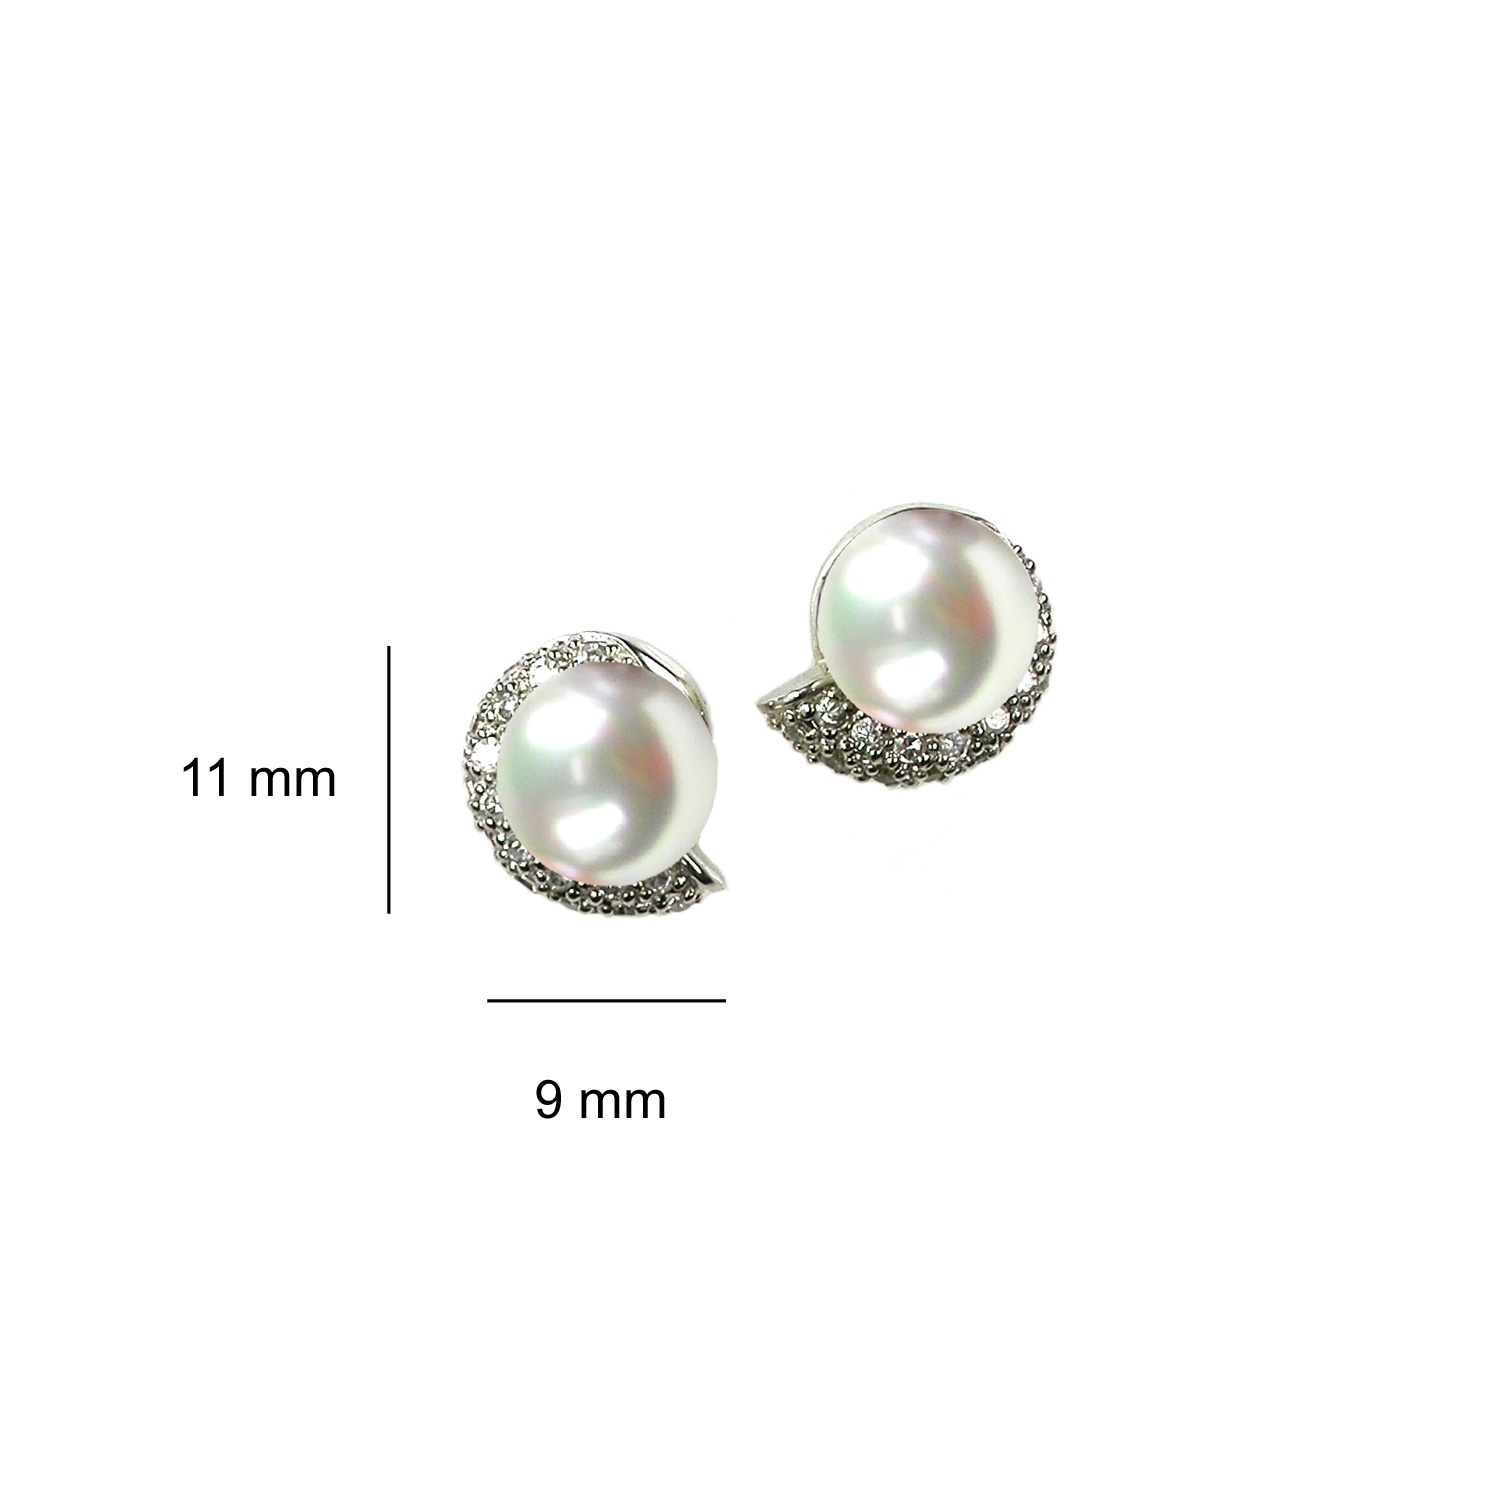 Sterling Silver Earrings 3